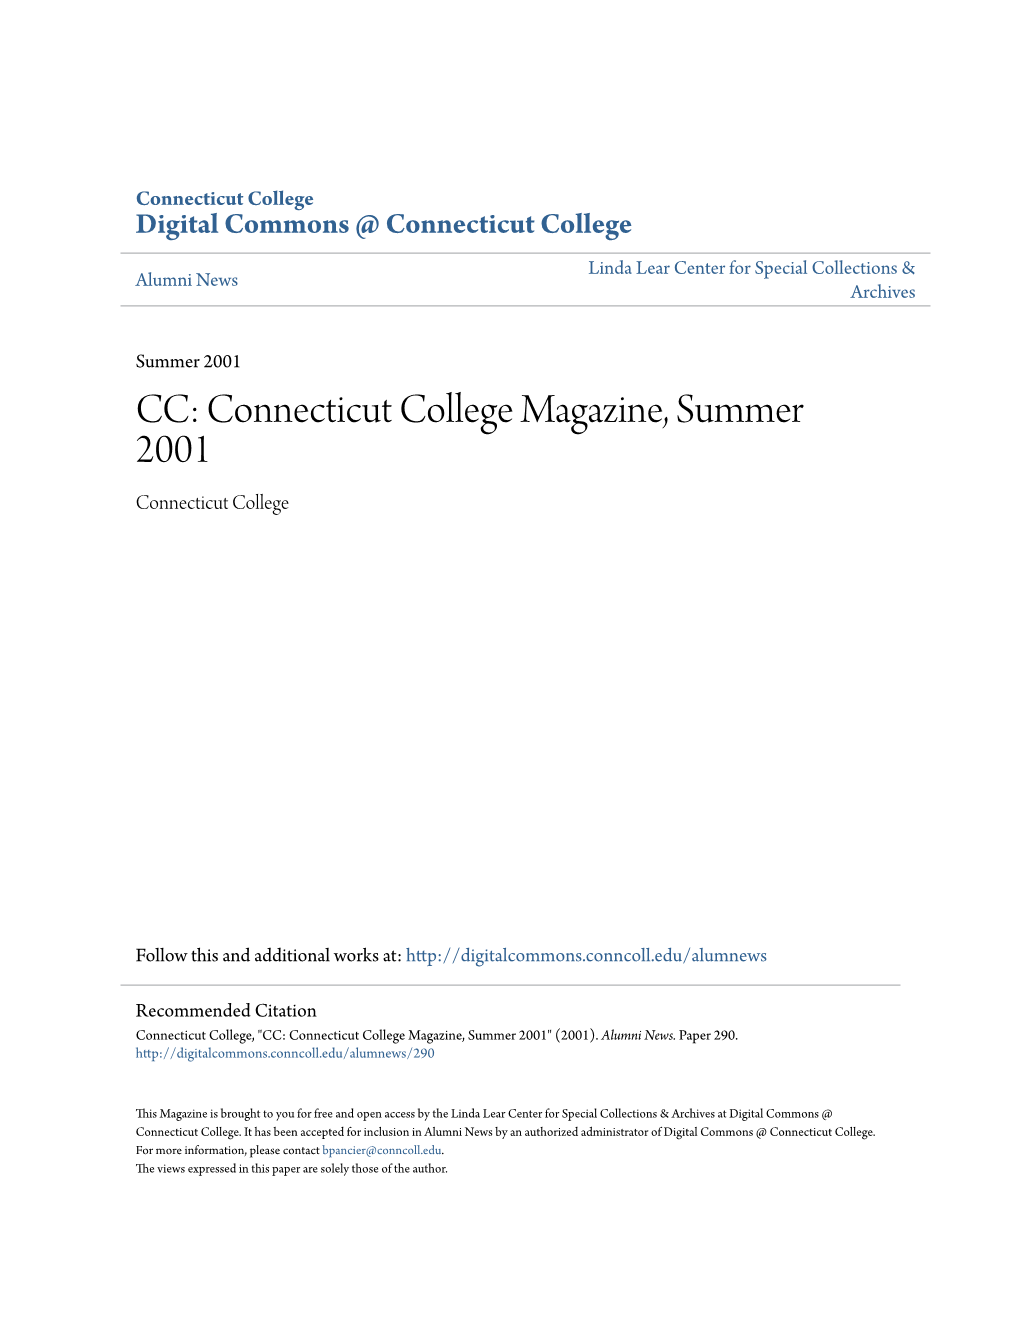 CC: Connecticut College Magazine, Summer 2001 Connecticut College